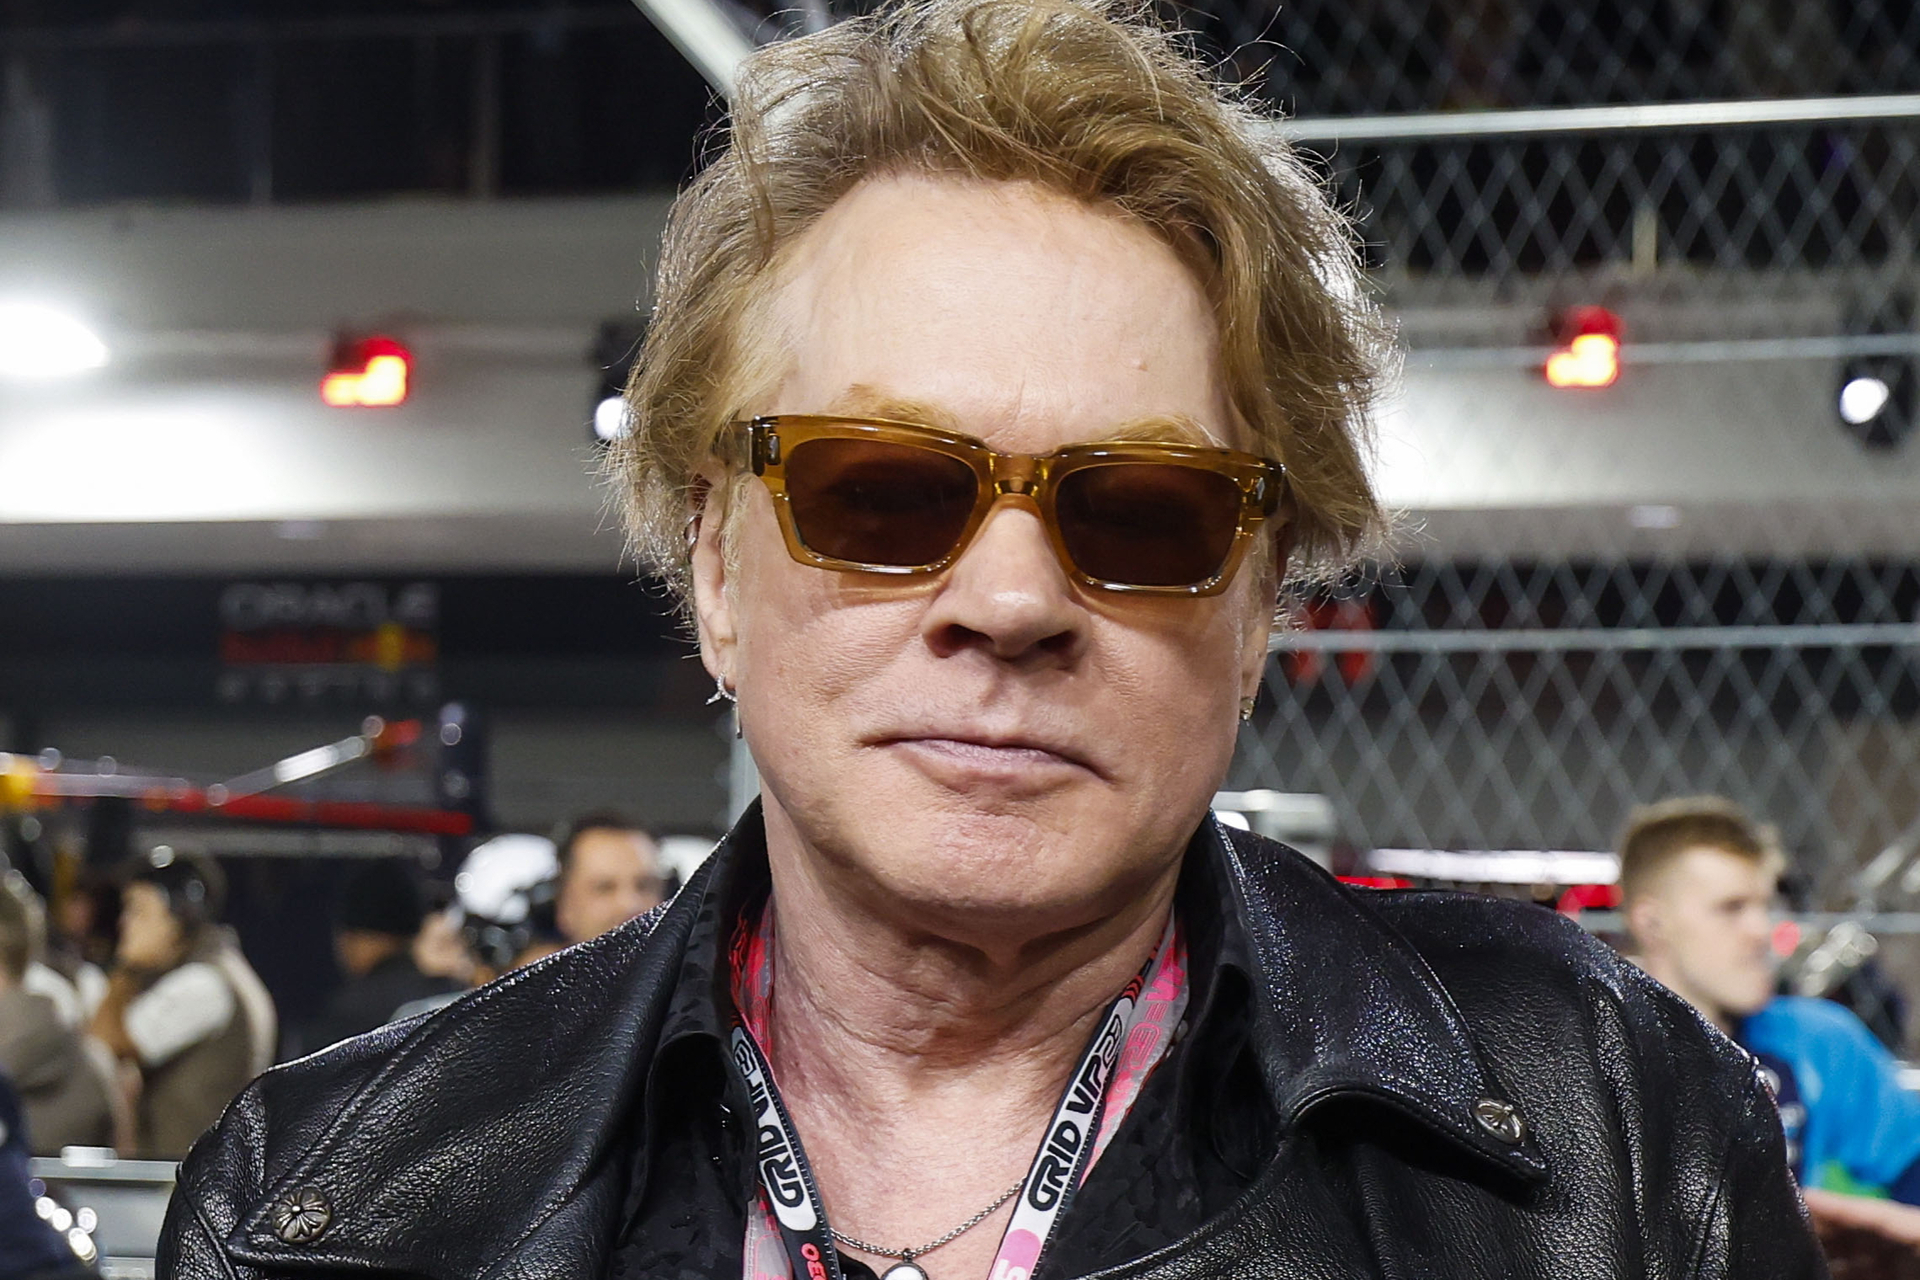 El vocalista de Guns N' Roses, Axl Rose, fue denunciado este miércoles en Nueva York por agredir sexualmente a la modelo y actriz Sheila Kennedy en una habitación de hotel hace más de 30 años, en 1989.